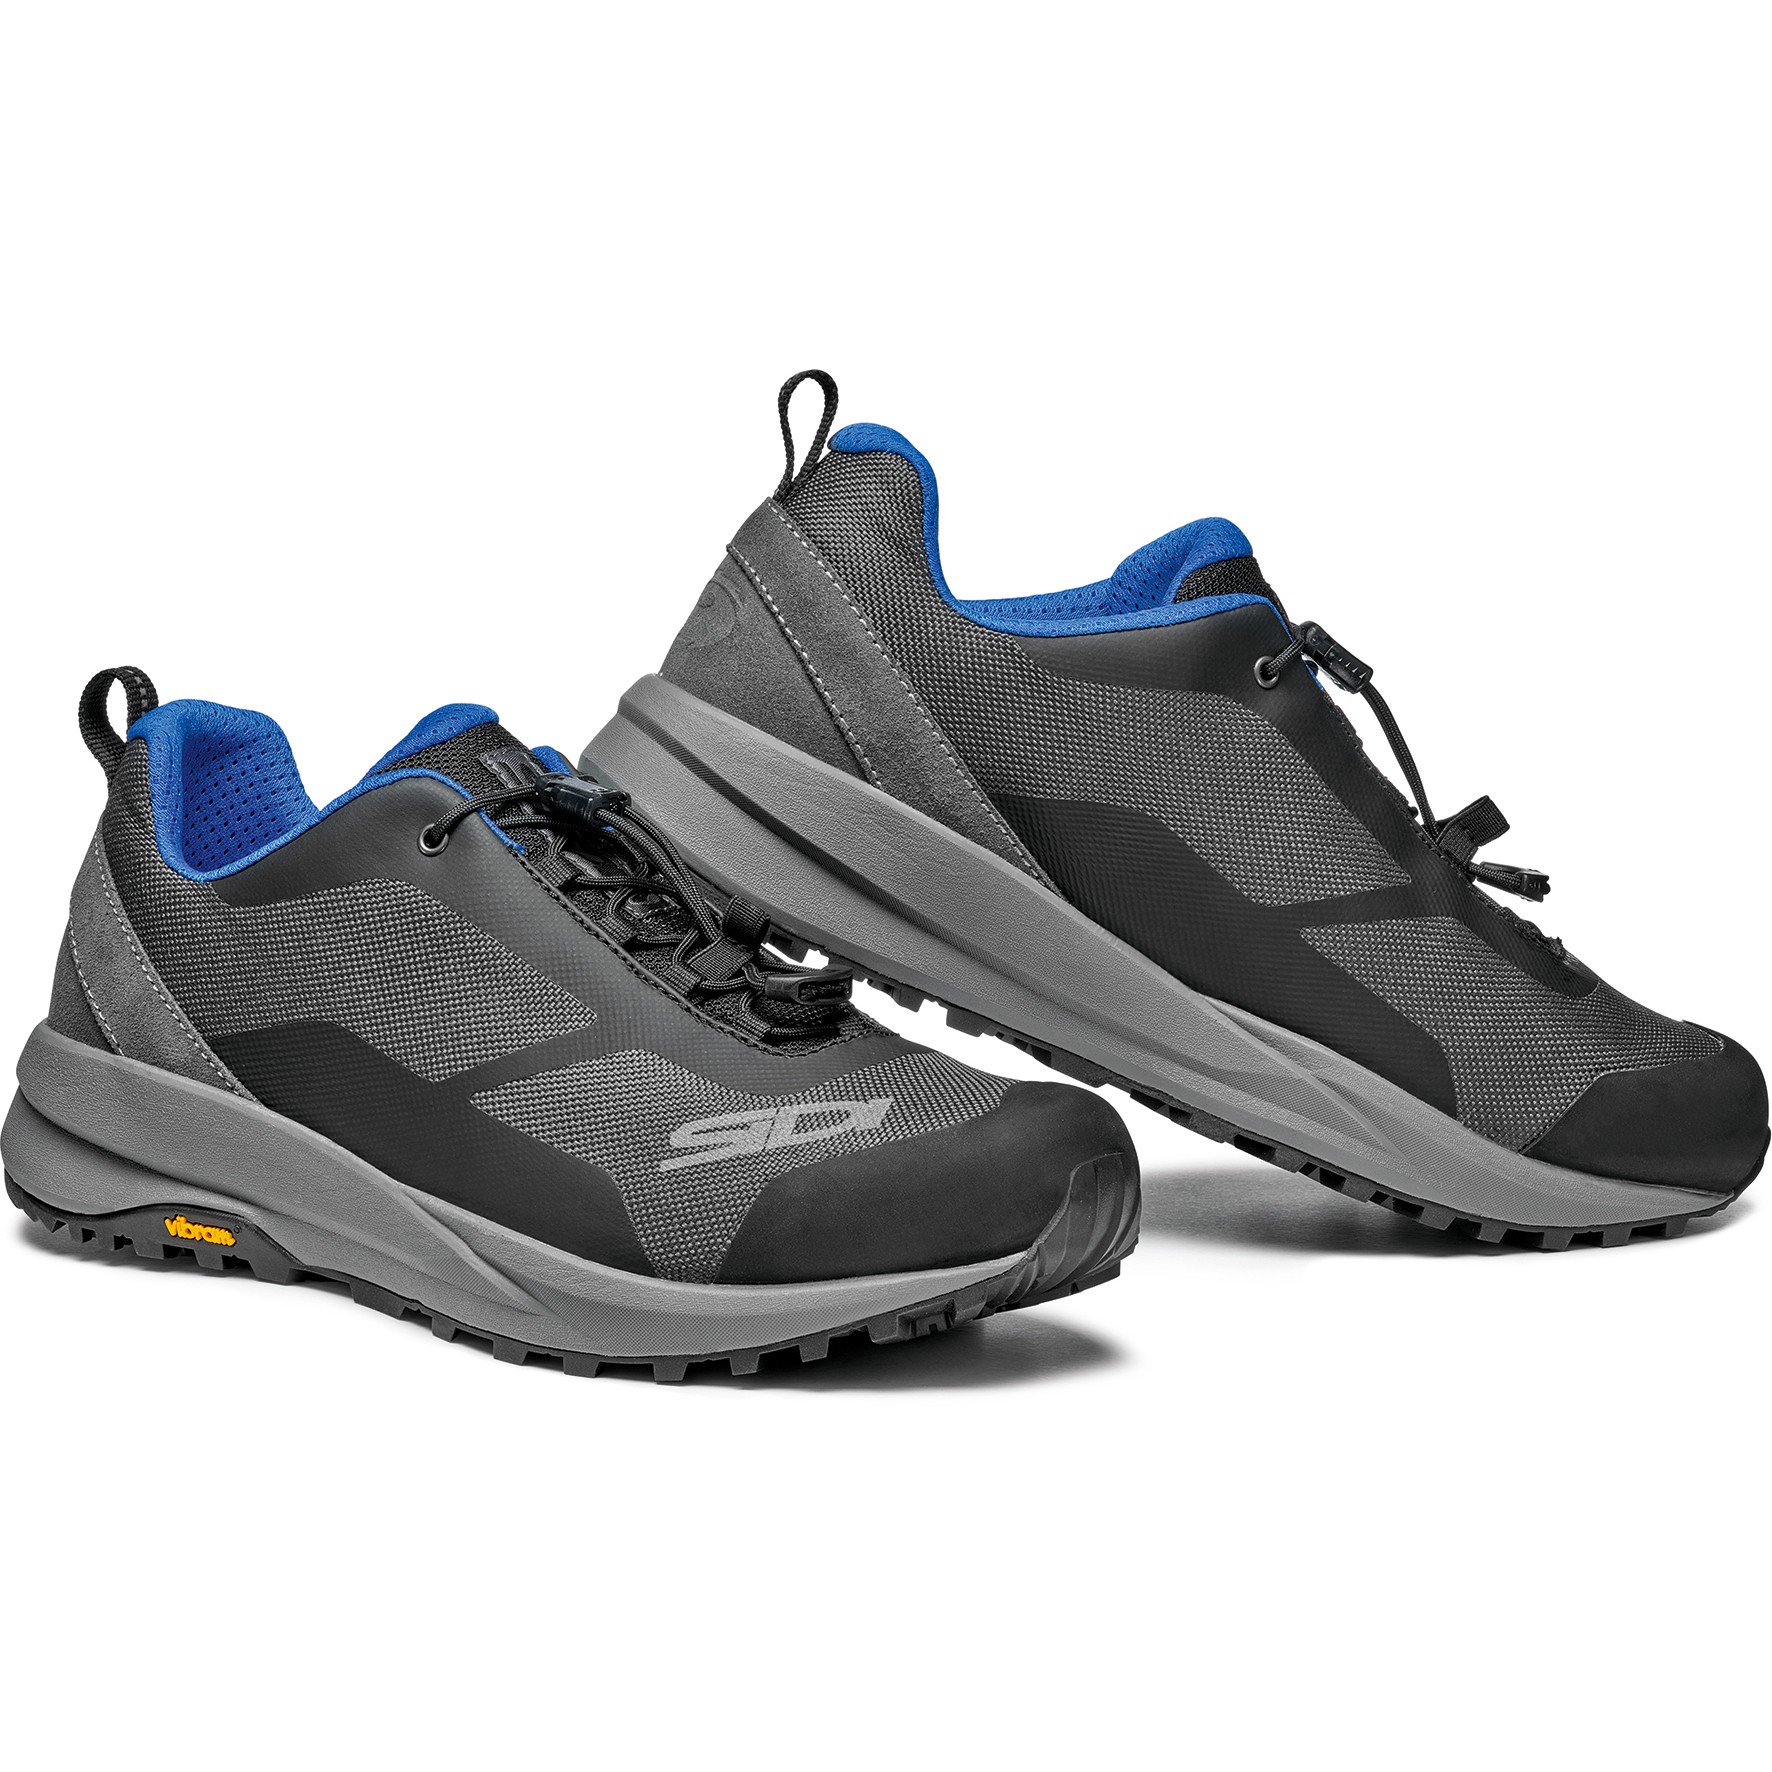 Produktbild von Sidi Explorer MTB Schuhe - grau/schwarz